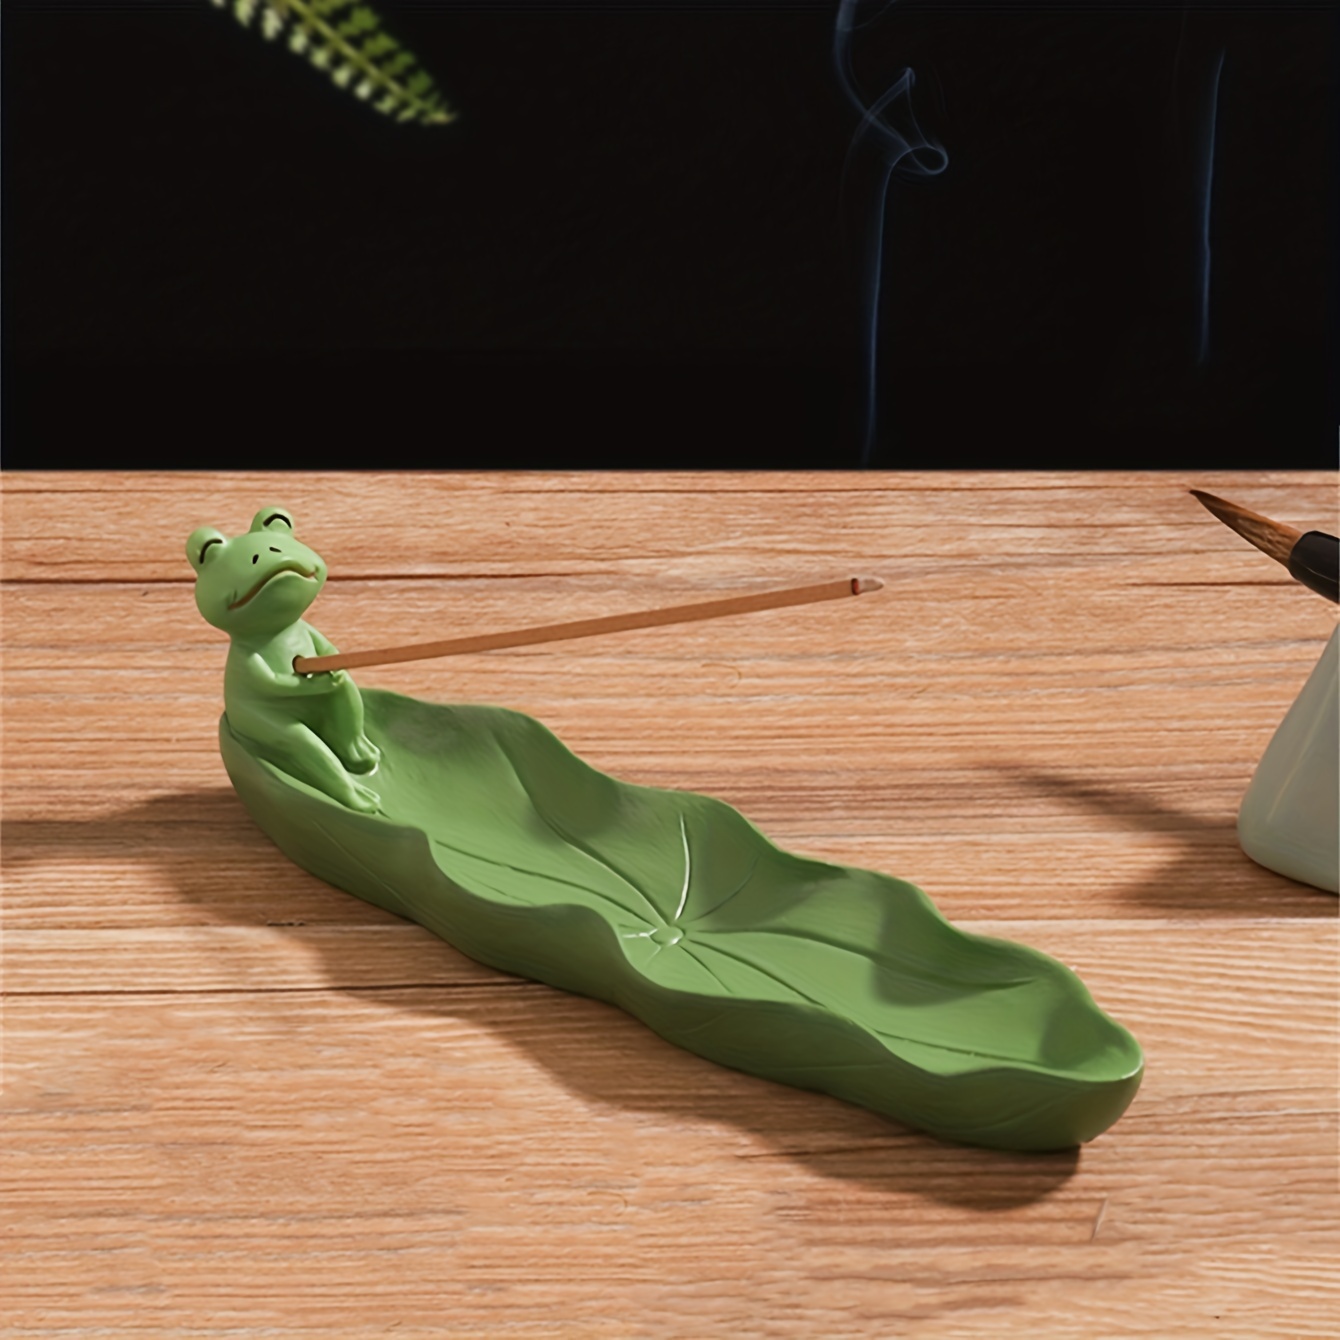 

1pc, Cartoon Frog Leaf Design Incense Stick Holder, Incense Burner, Craft Ornament For Spa, Yoga, Meditation, Home Decor, Room Decor, Gifts